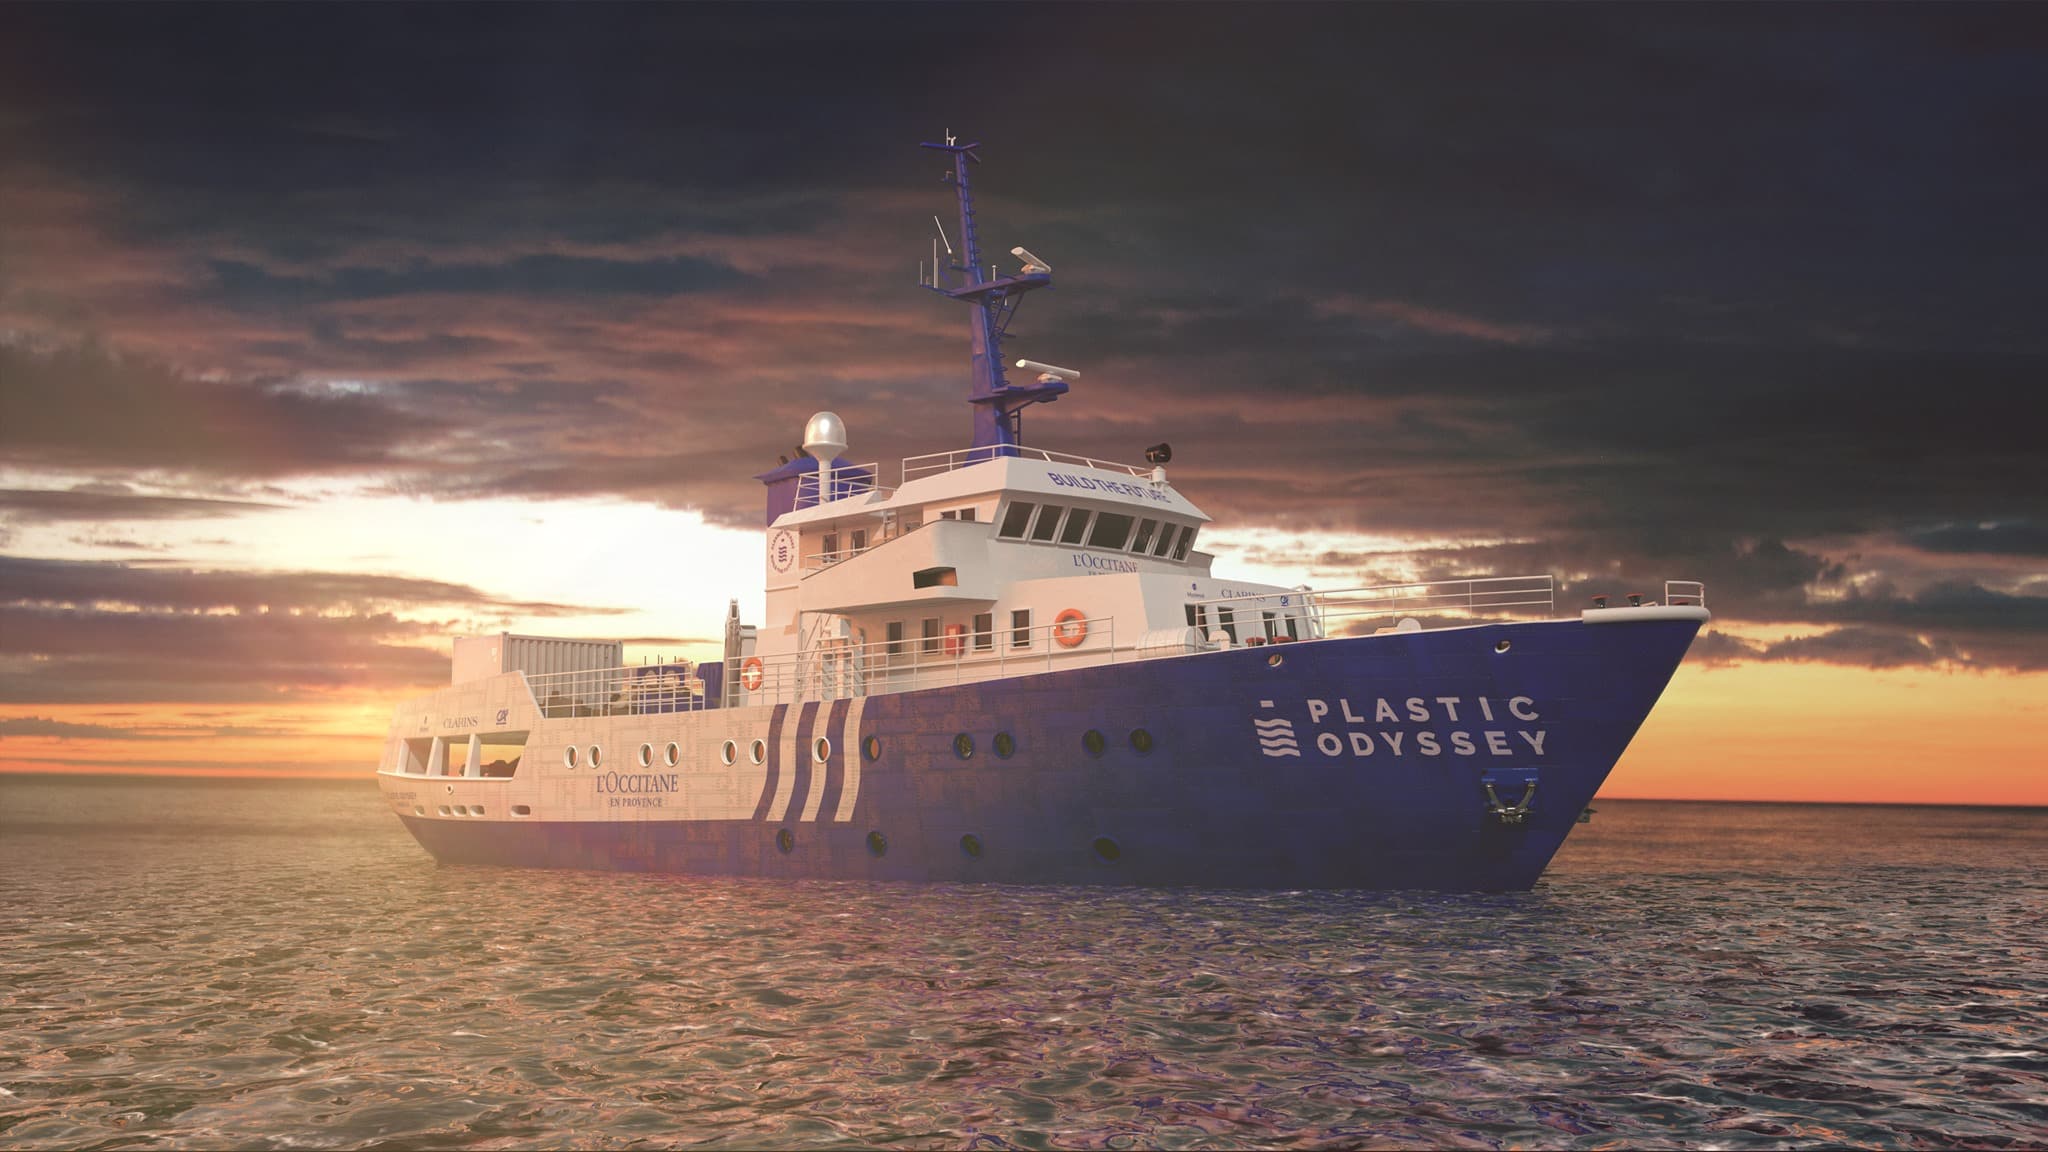 , Plastic Odyssey, le bateau qui nettoie les océans partira de Marseille en 2021, Made in Marseille